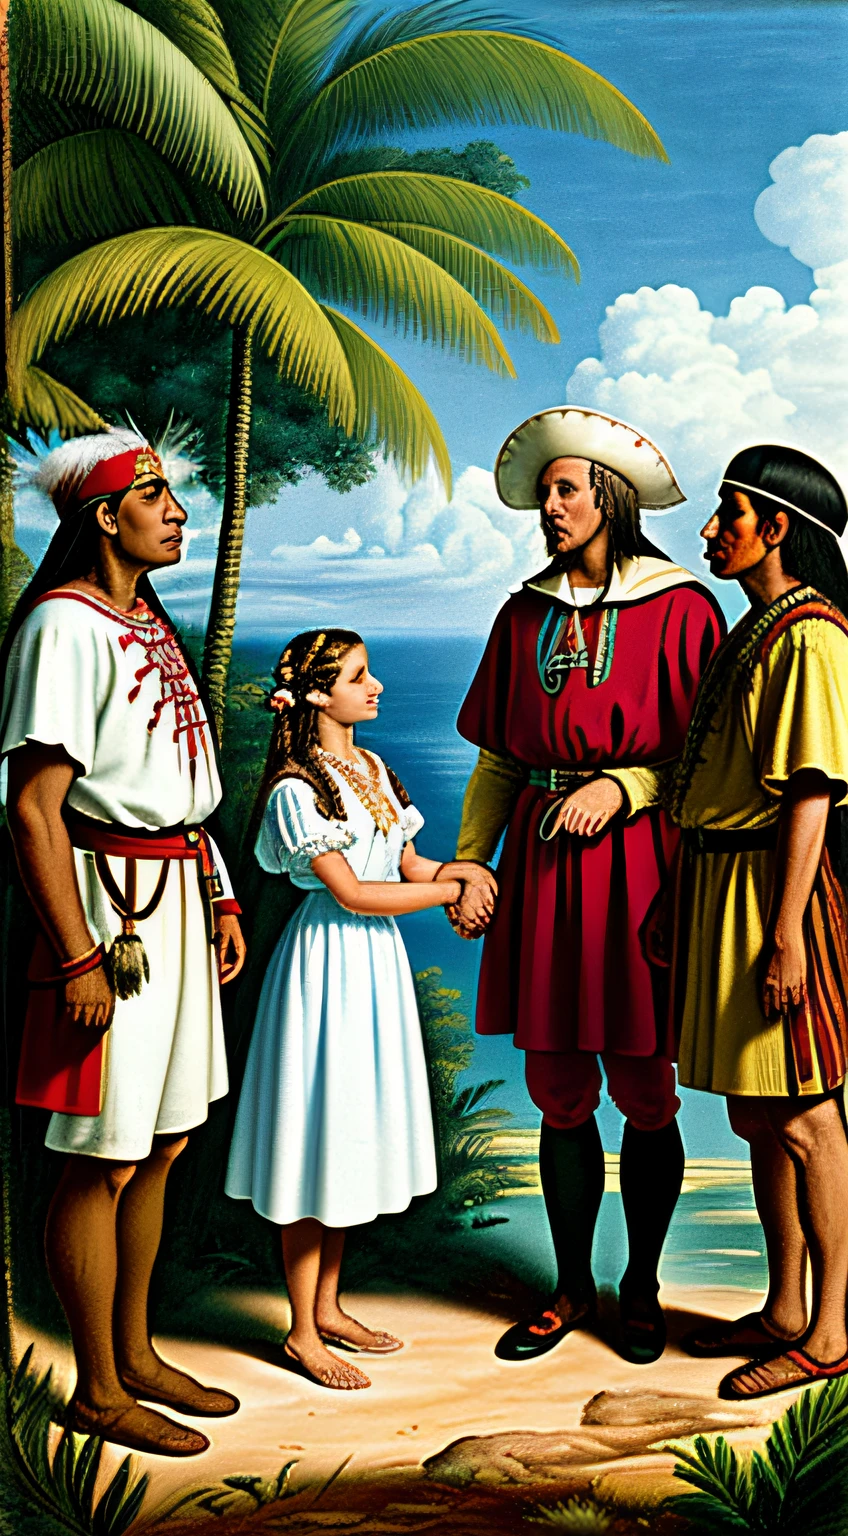 탐험가 복장을 한 크리스토퍼 콜럼버스의 역사적 장면, 전통 의상을 입은 아메리카 원주민과의 만남, 무성한 카리브해 풍경 속에서, 상호 호기심과 존중, 사실적인 스타일.